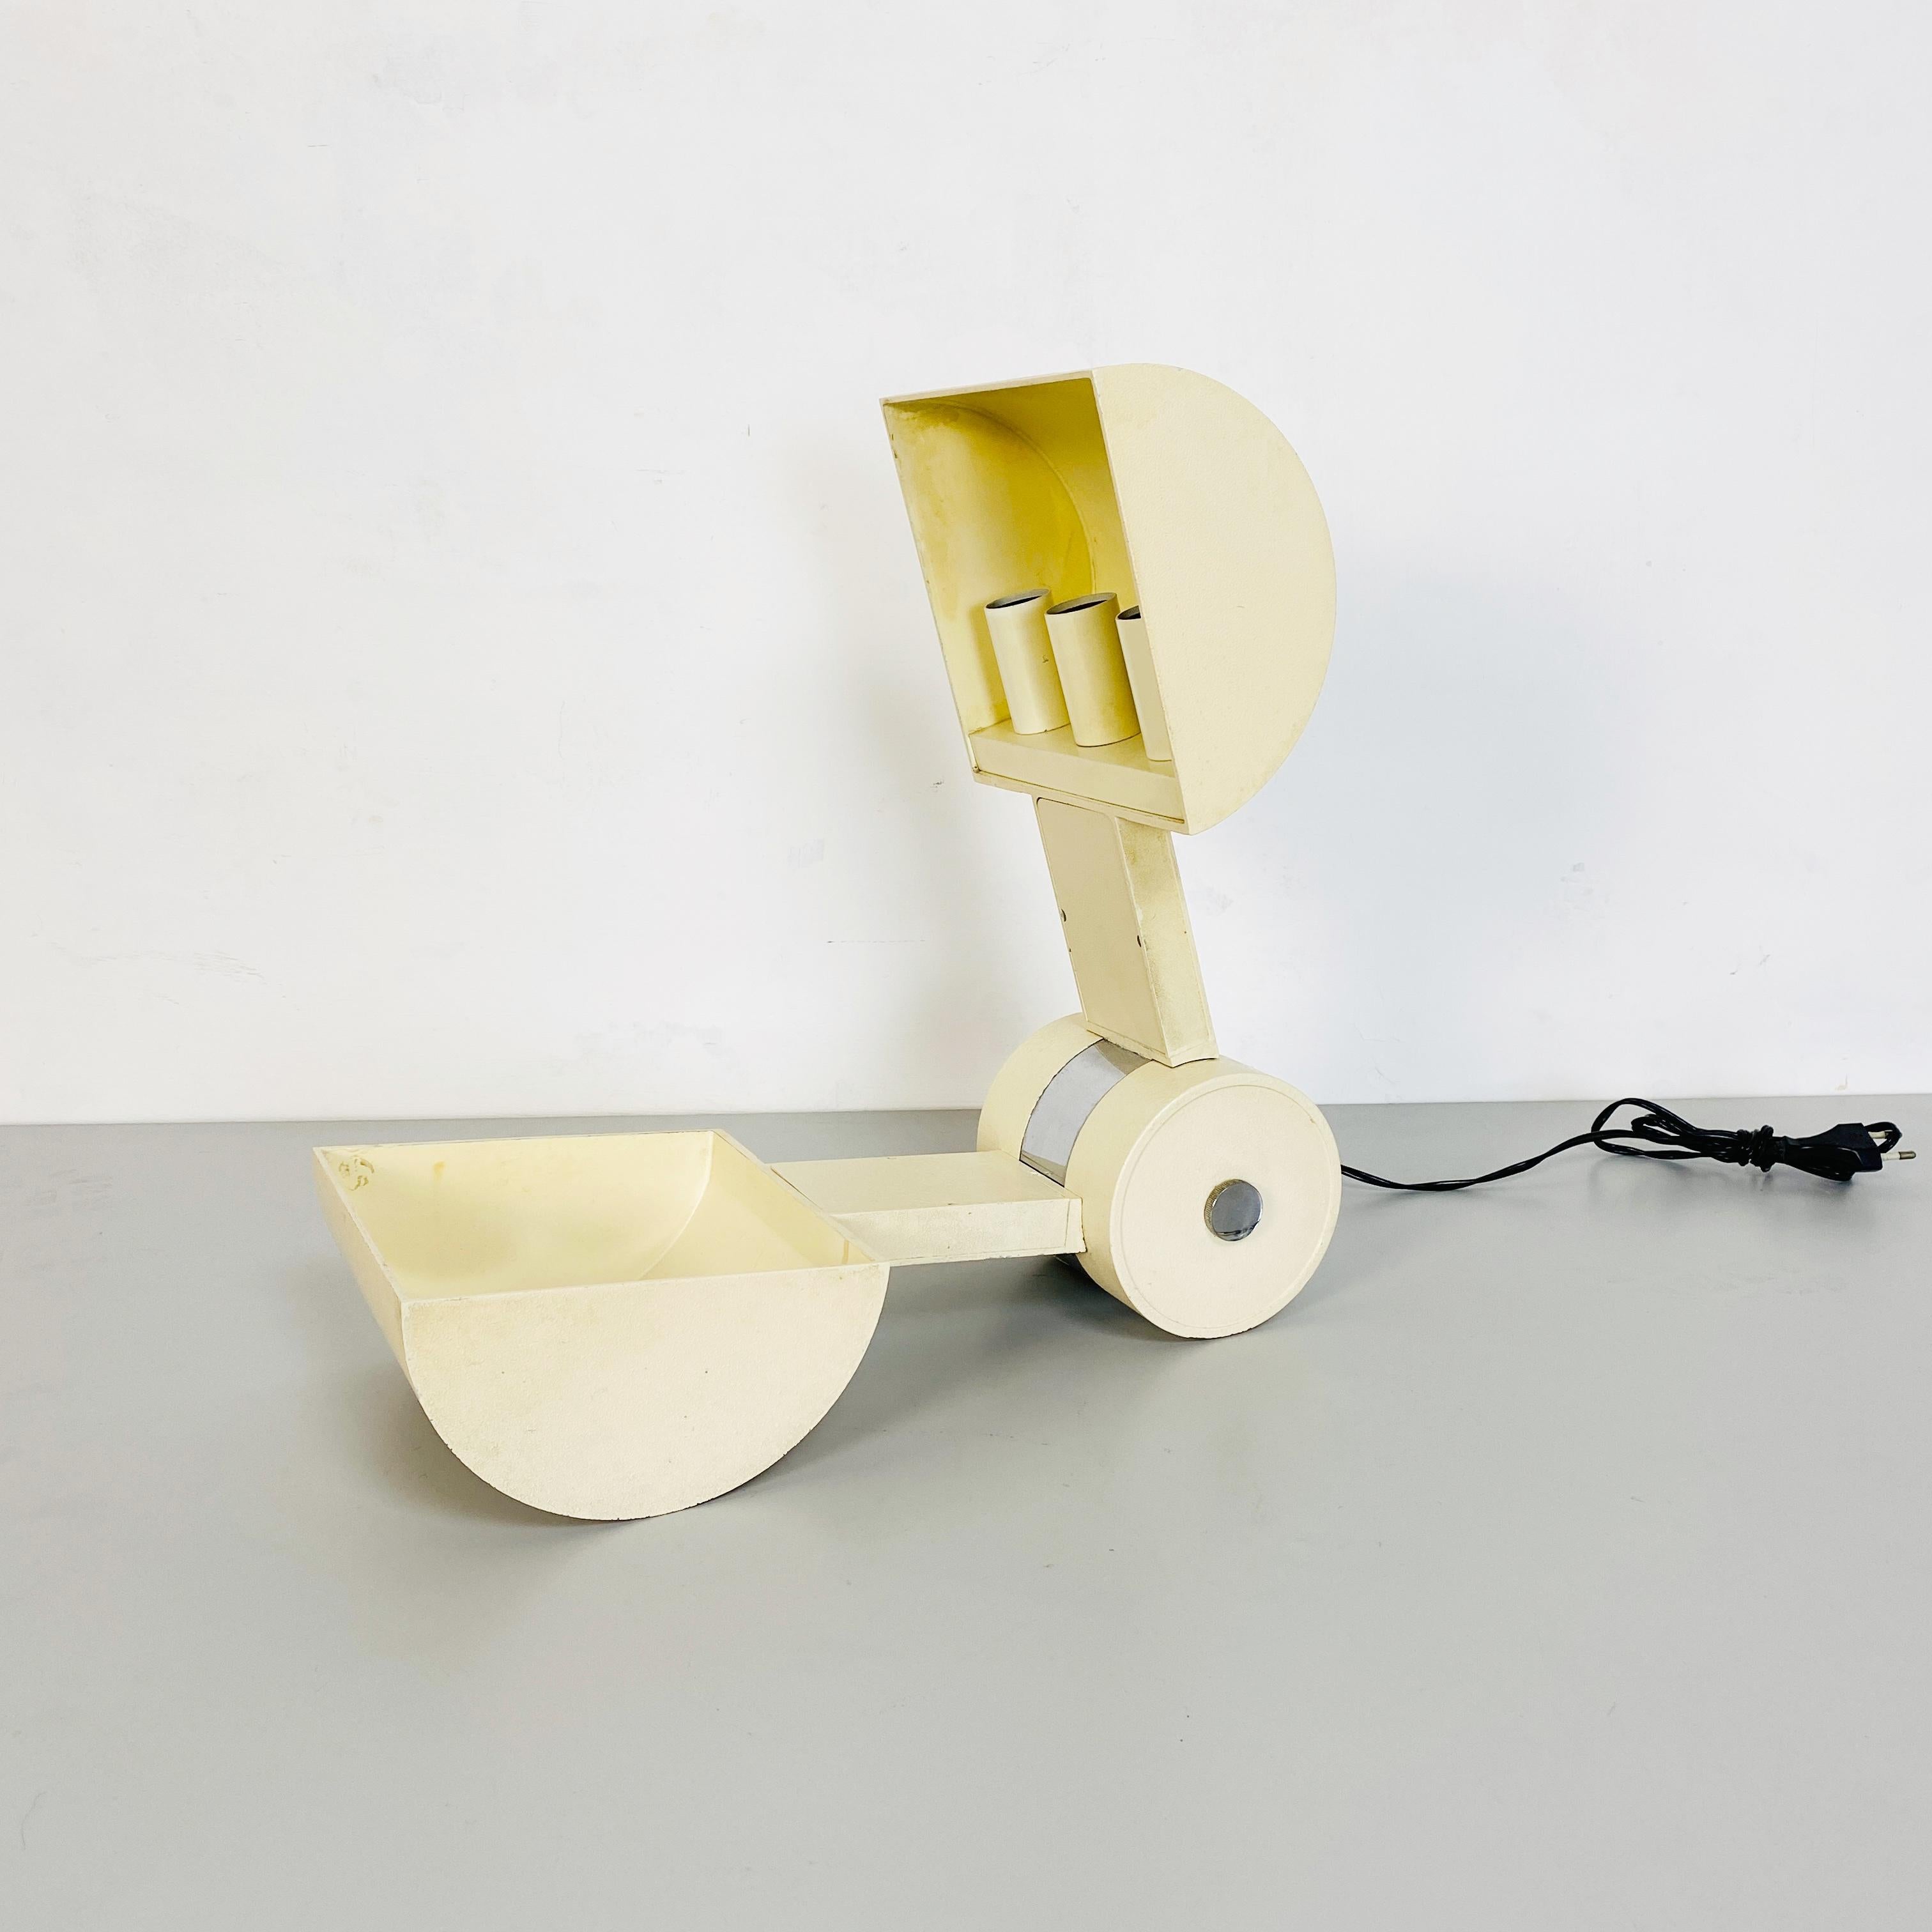 Lampe de table Schiacciasassi de Gian Paolo Benedini pour Tecnosalotto, 1980
Lampe de table en métal blanc avec des détails en métal chromé. Il peut être ouvert et fermé complètement, il est composé de trois ampoules. Mod. Schiacciasassi de Gian